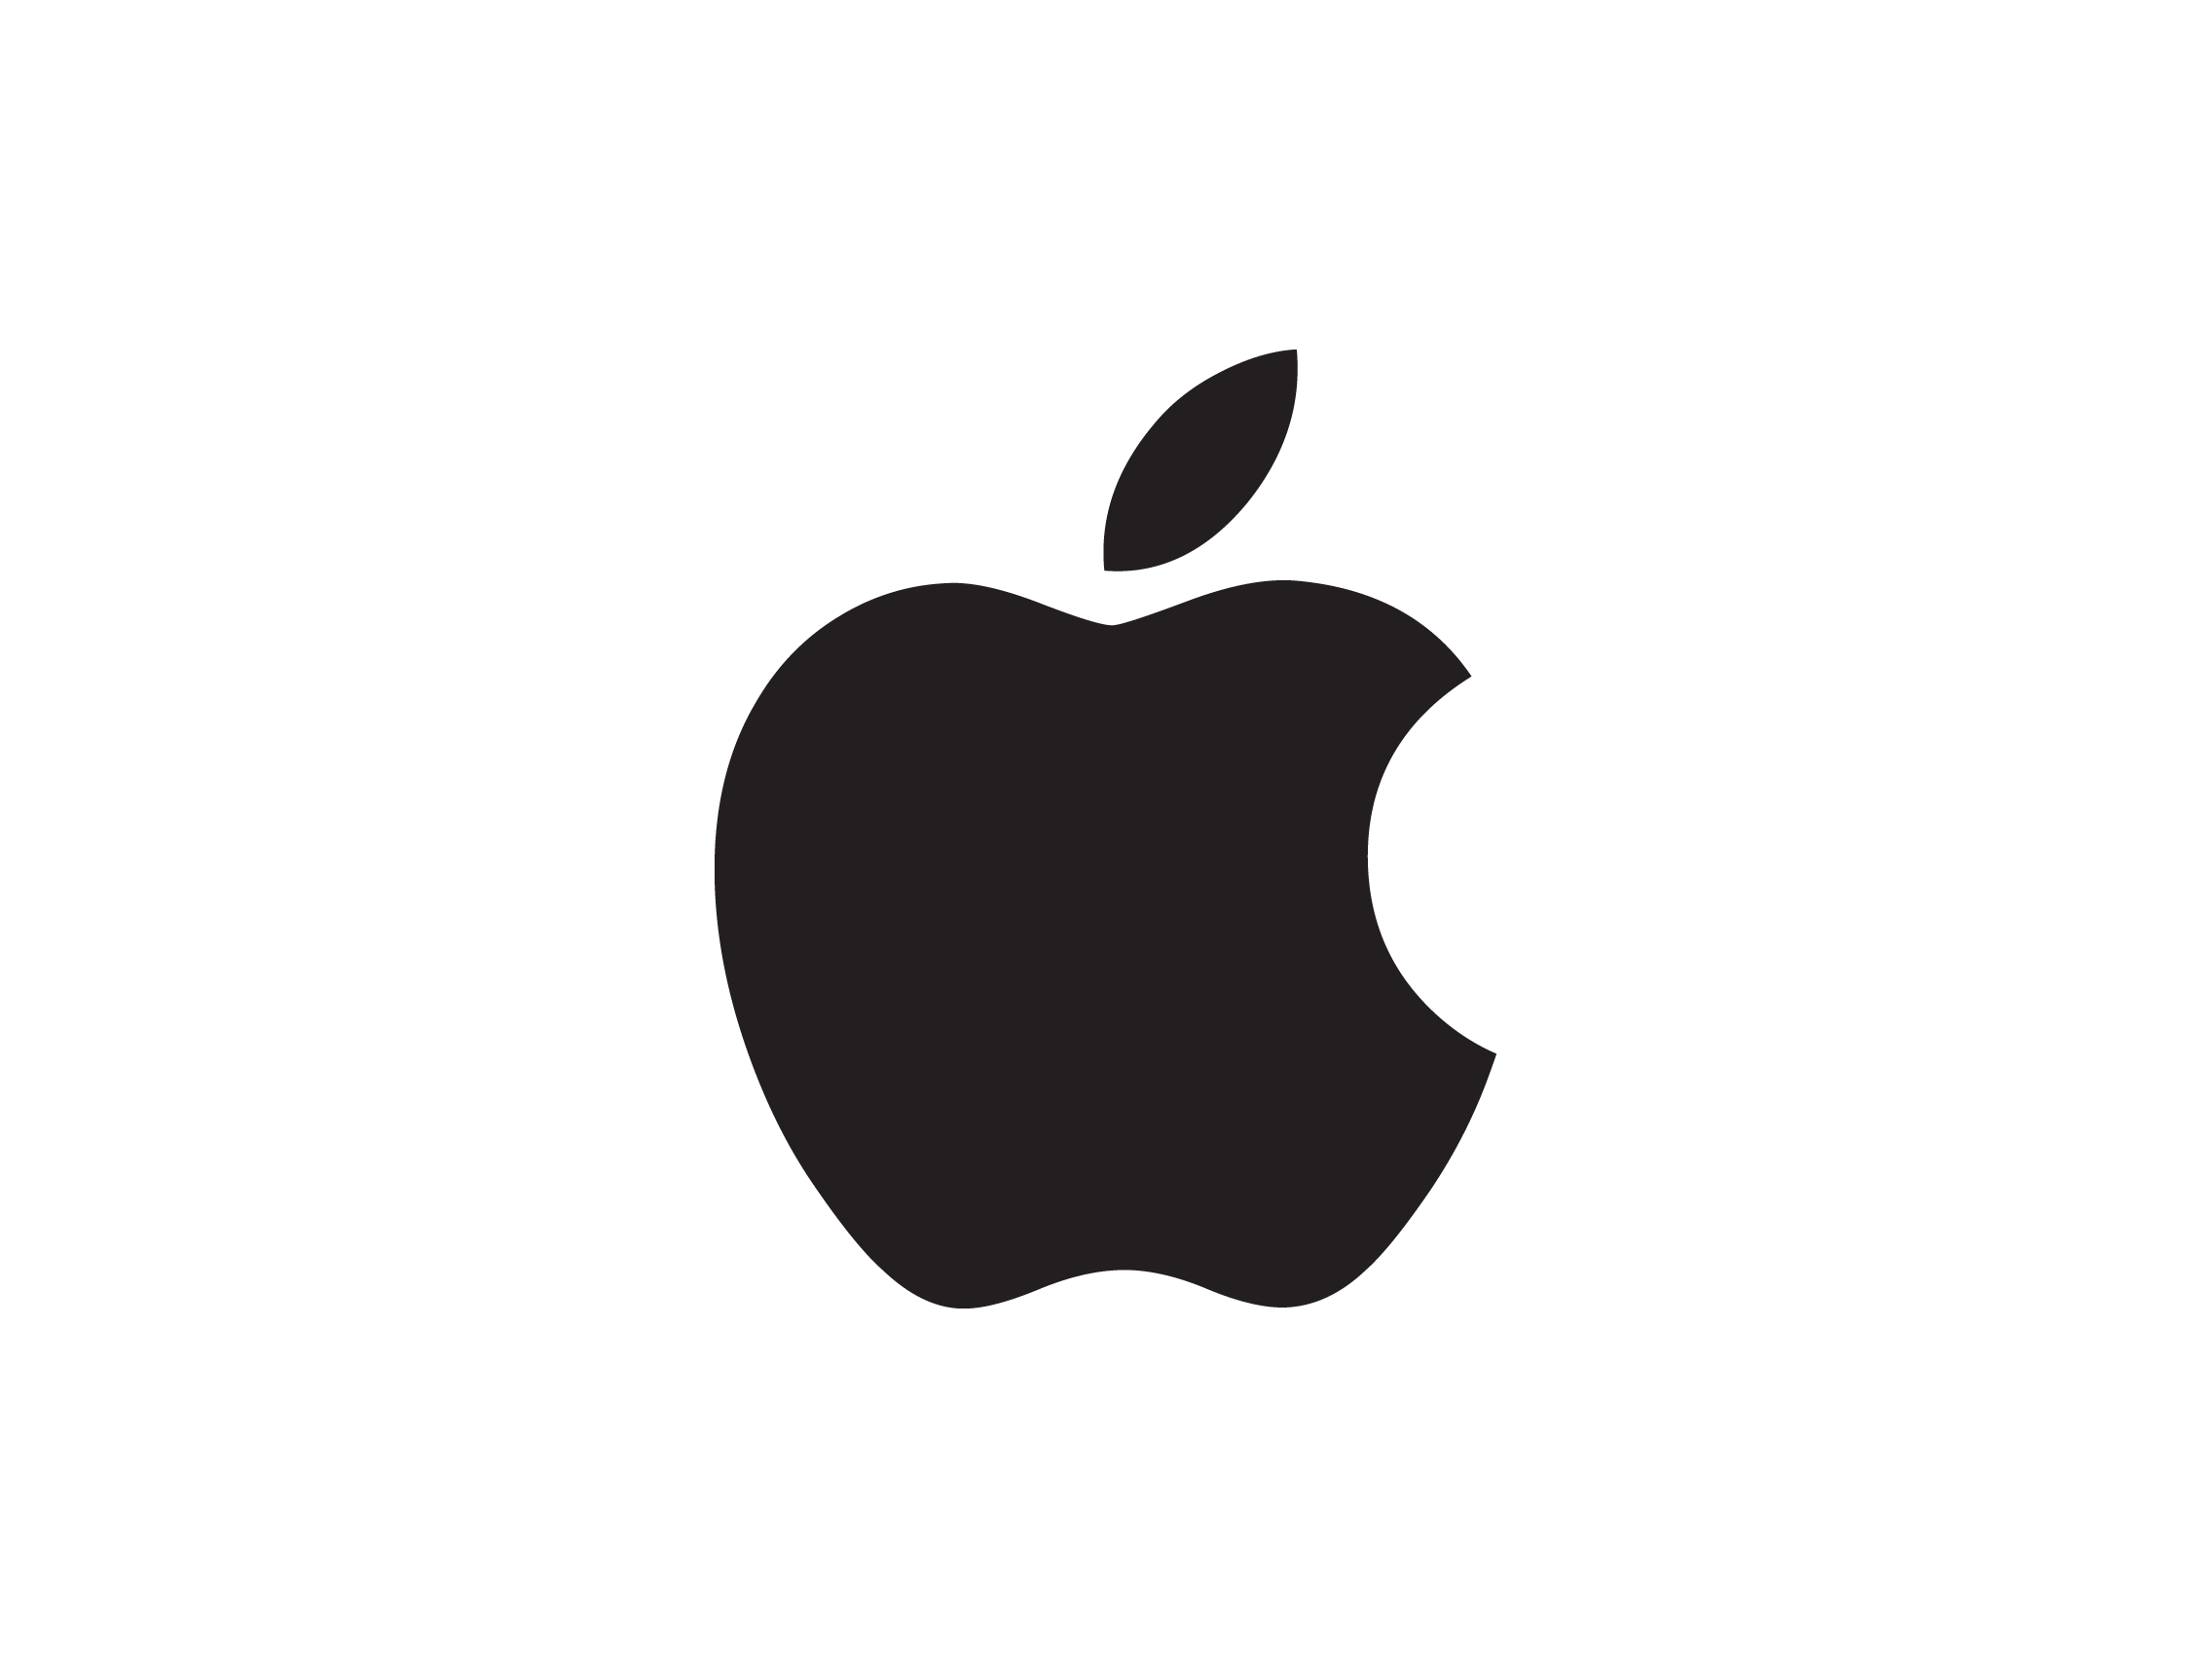 Transparent Apple Logo - Apple logo PNG images free download